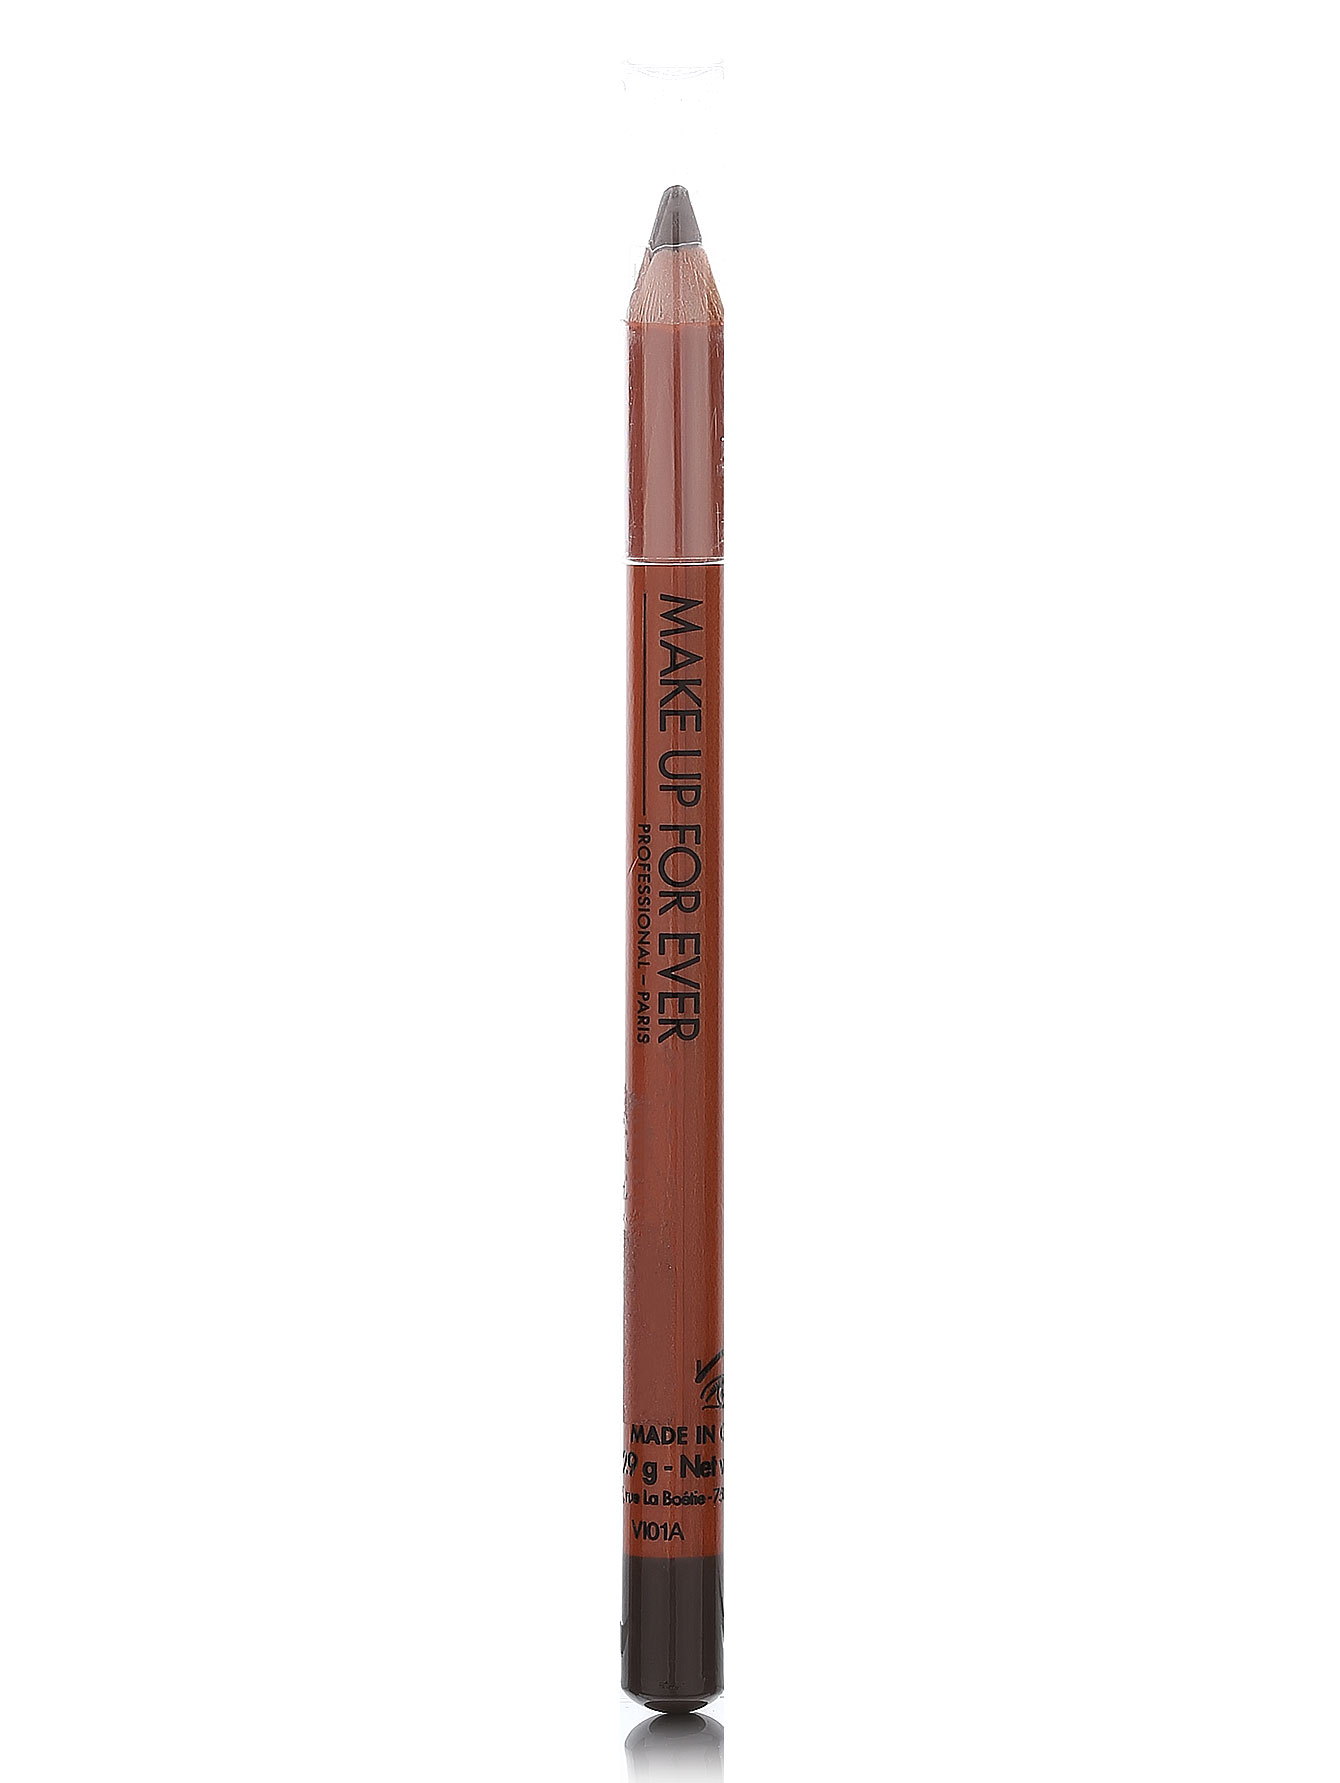  Карандаш для бровей - №4 темный серо-коричневый, Eyebrow Pencil - Общий вид